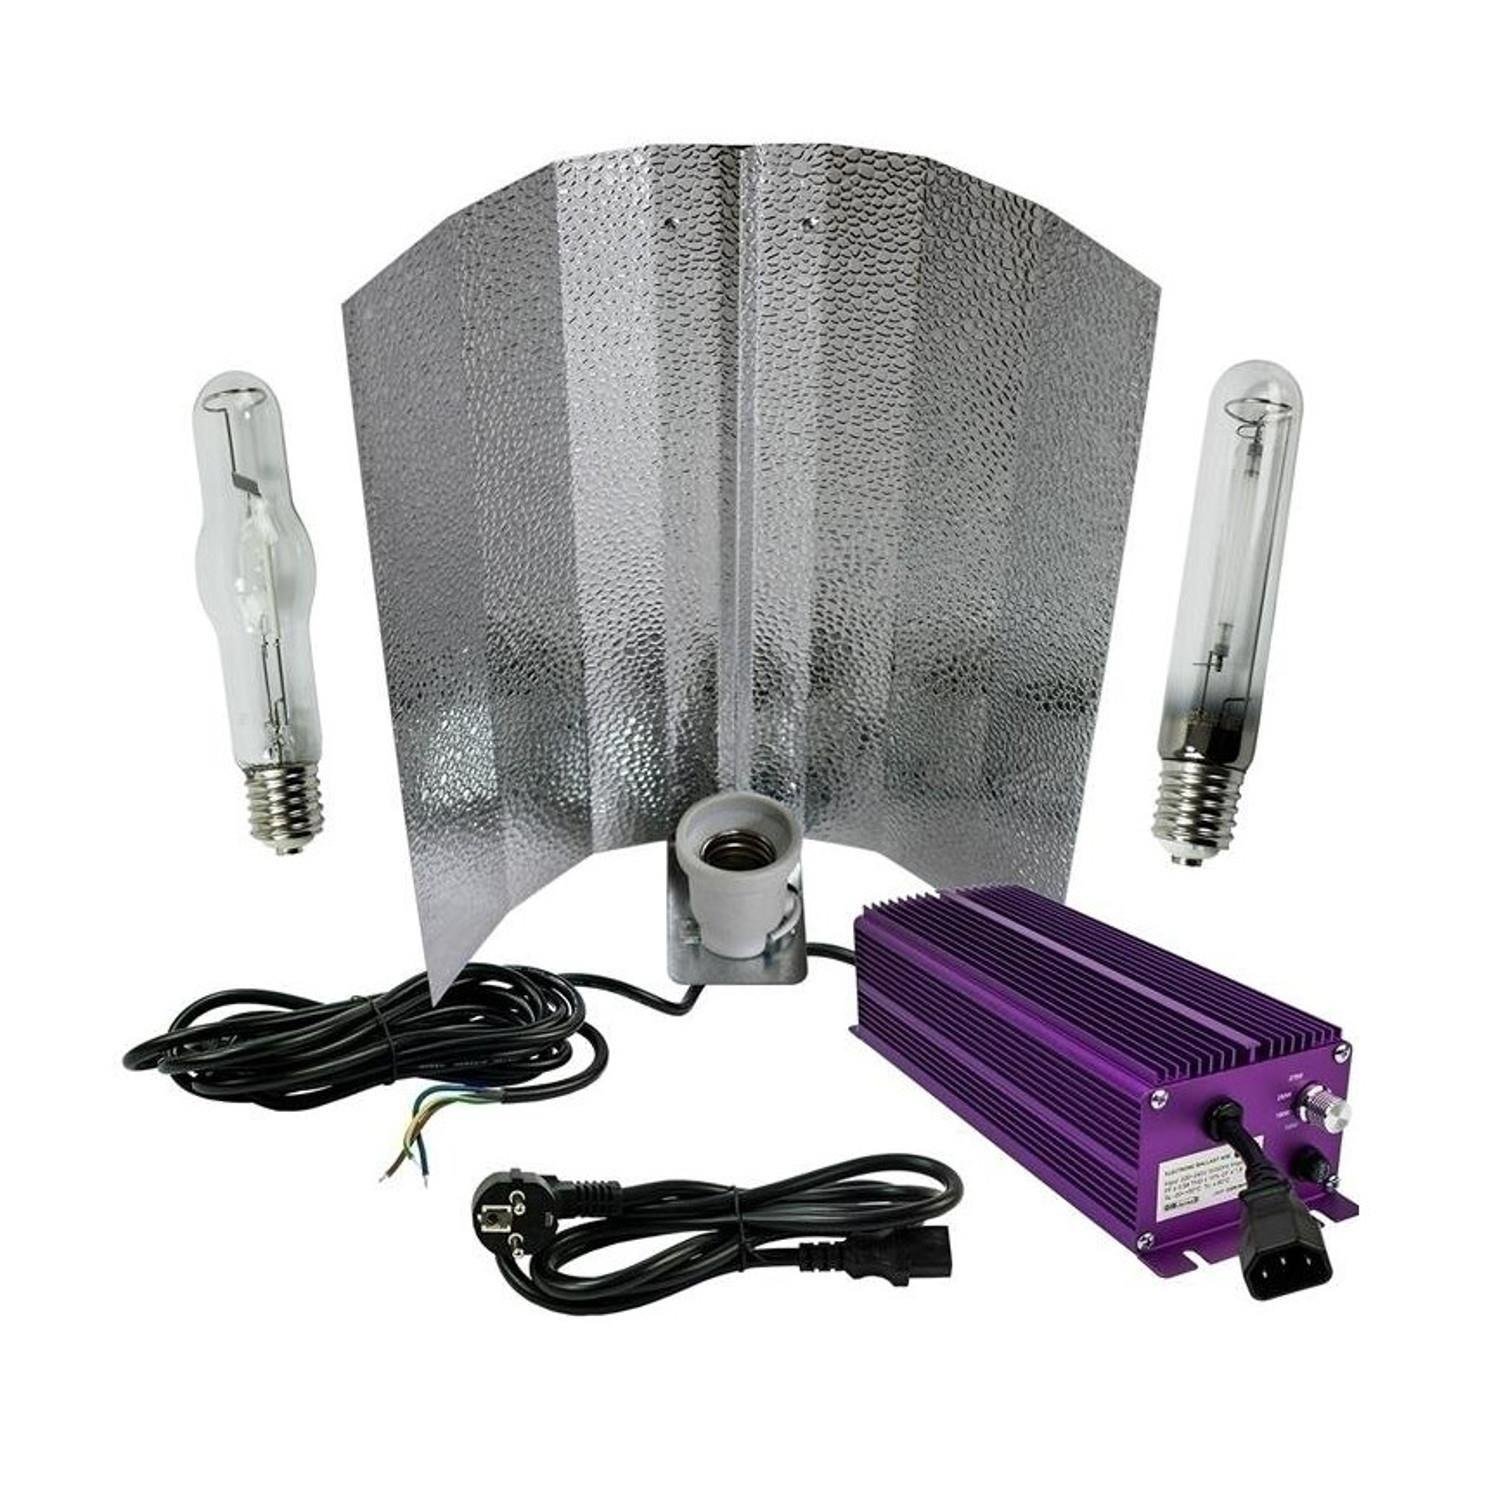 Lumatek Bausatz 400W Wuchs und Blüte- schaltbar unter Beleuchtung > Natriumdampflampen > Lampensets